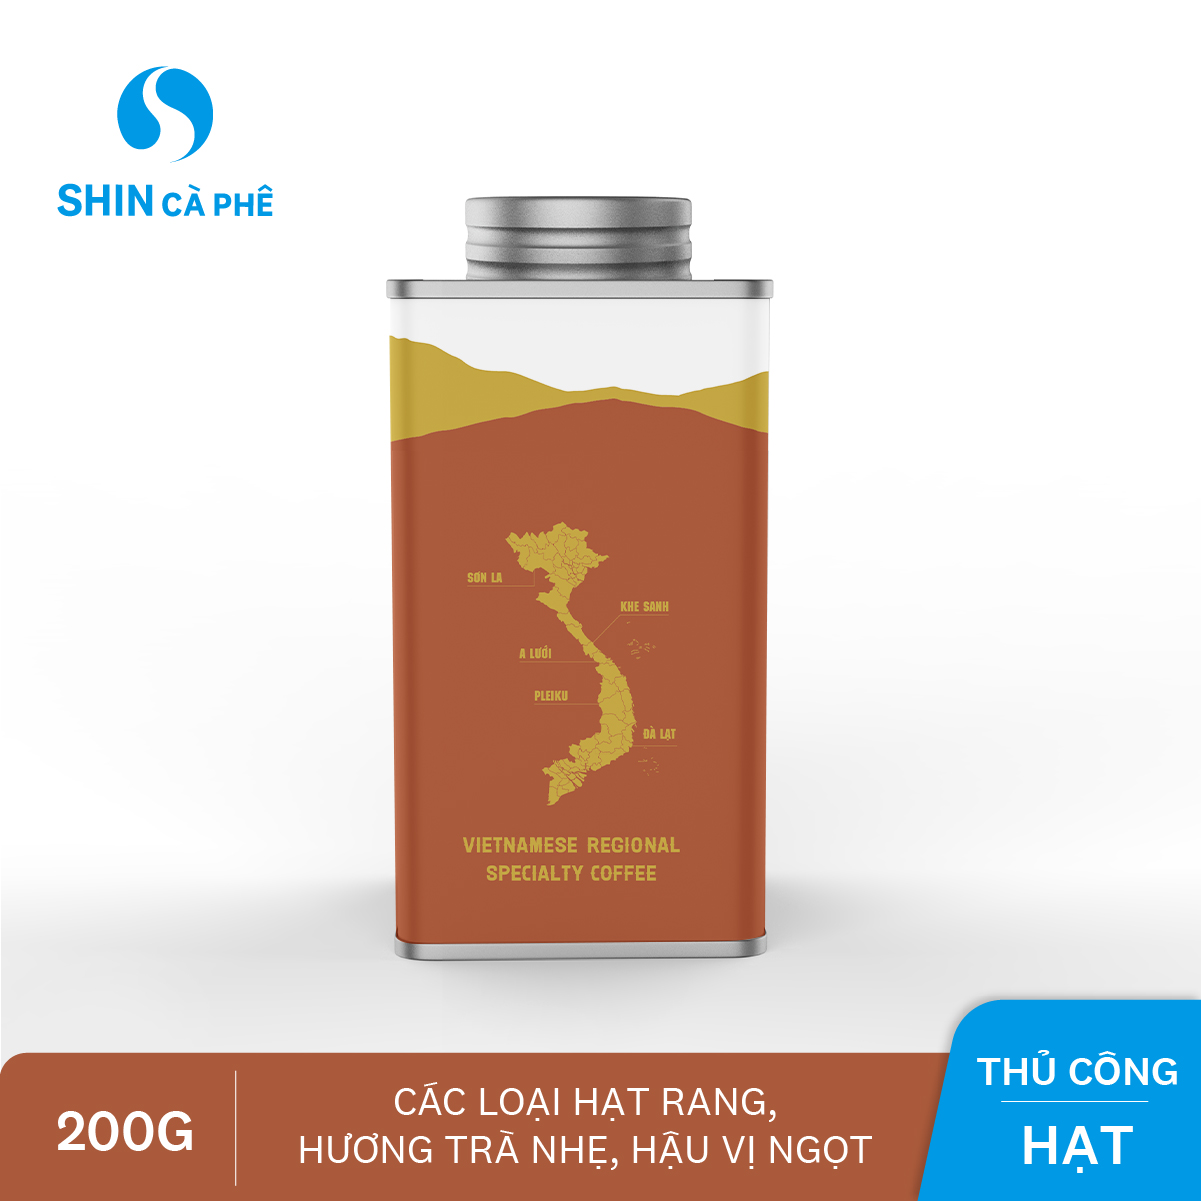 SHIN Cà Phê_Cà phê thủ công Khe Sanh Blend hộp thiếc 200g